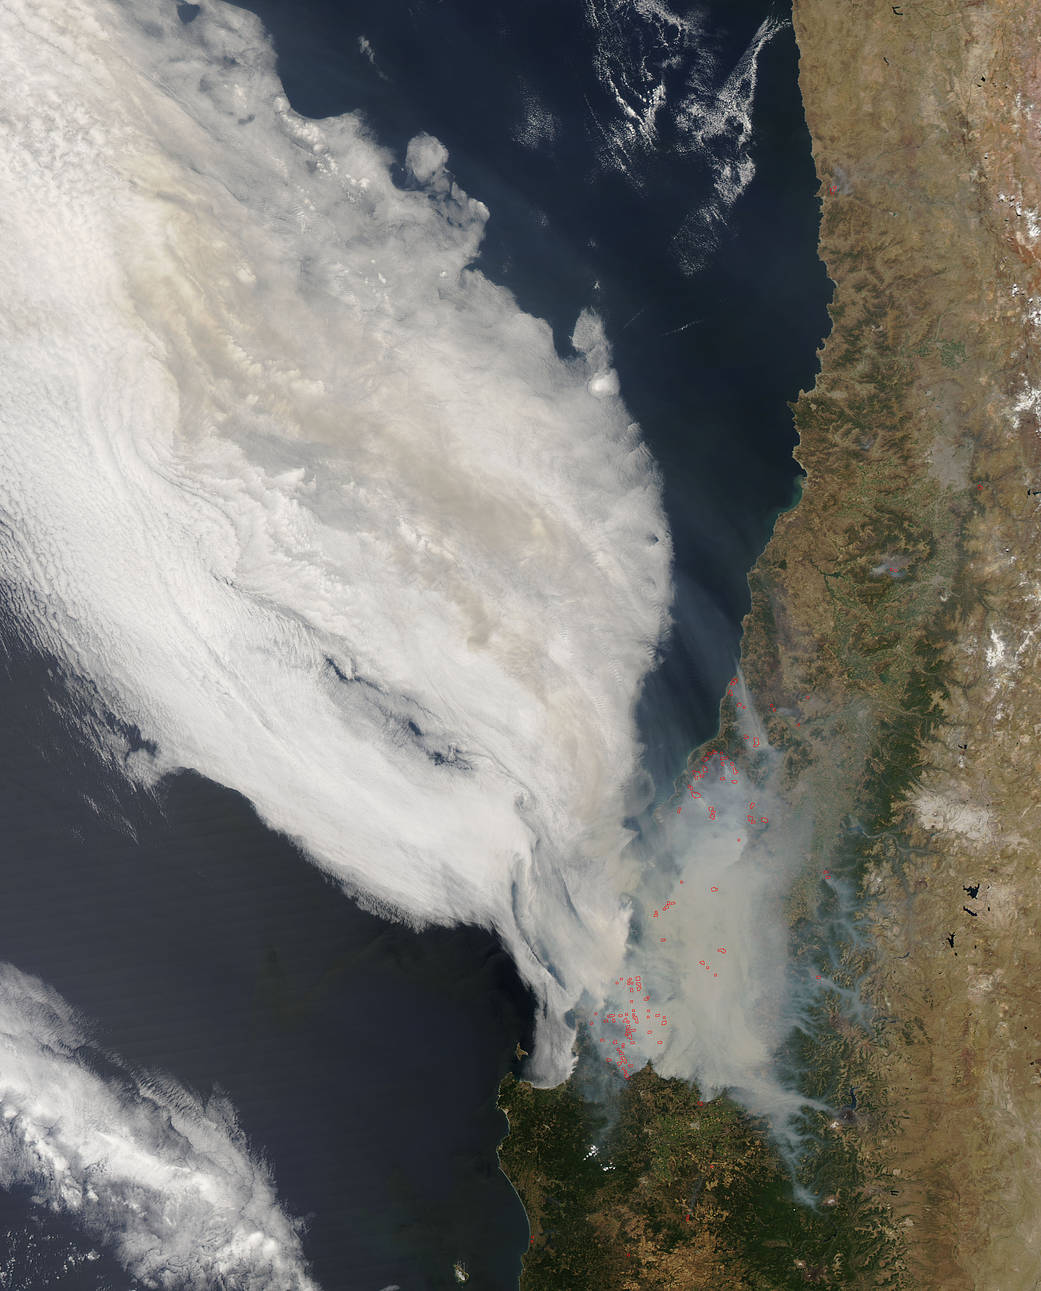 Las fotografías fueron tomadas a 705 km de altura y muestran las columnas de humo que se elevan sobre el océano Pacífico.